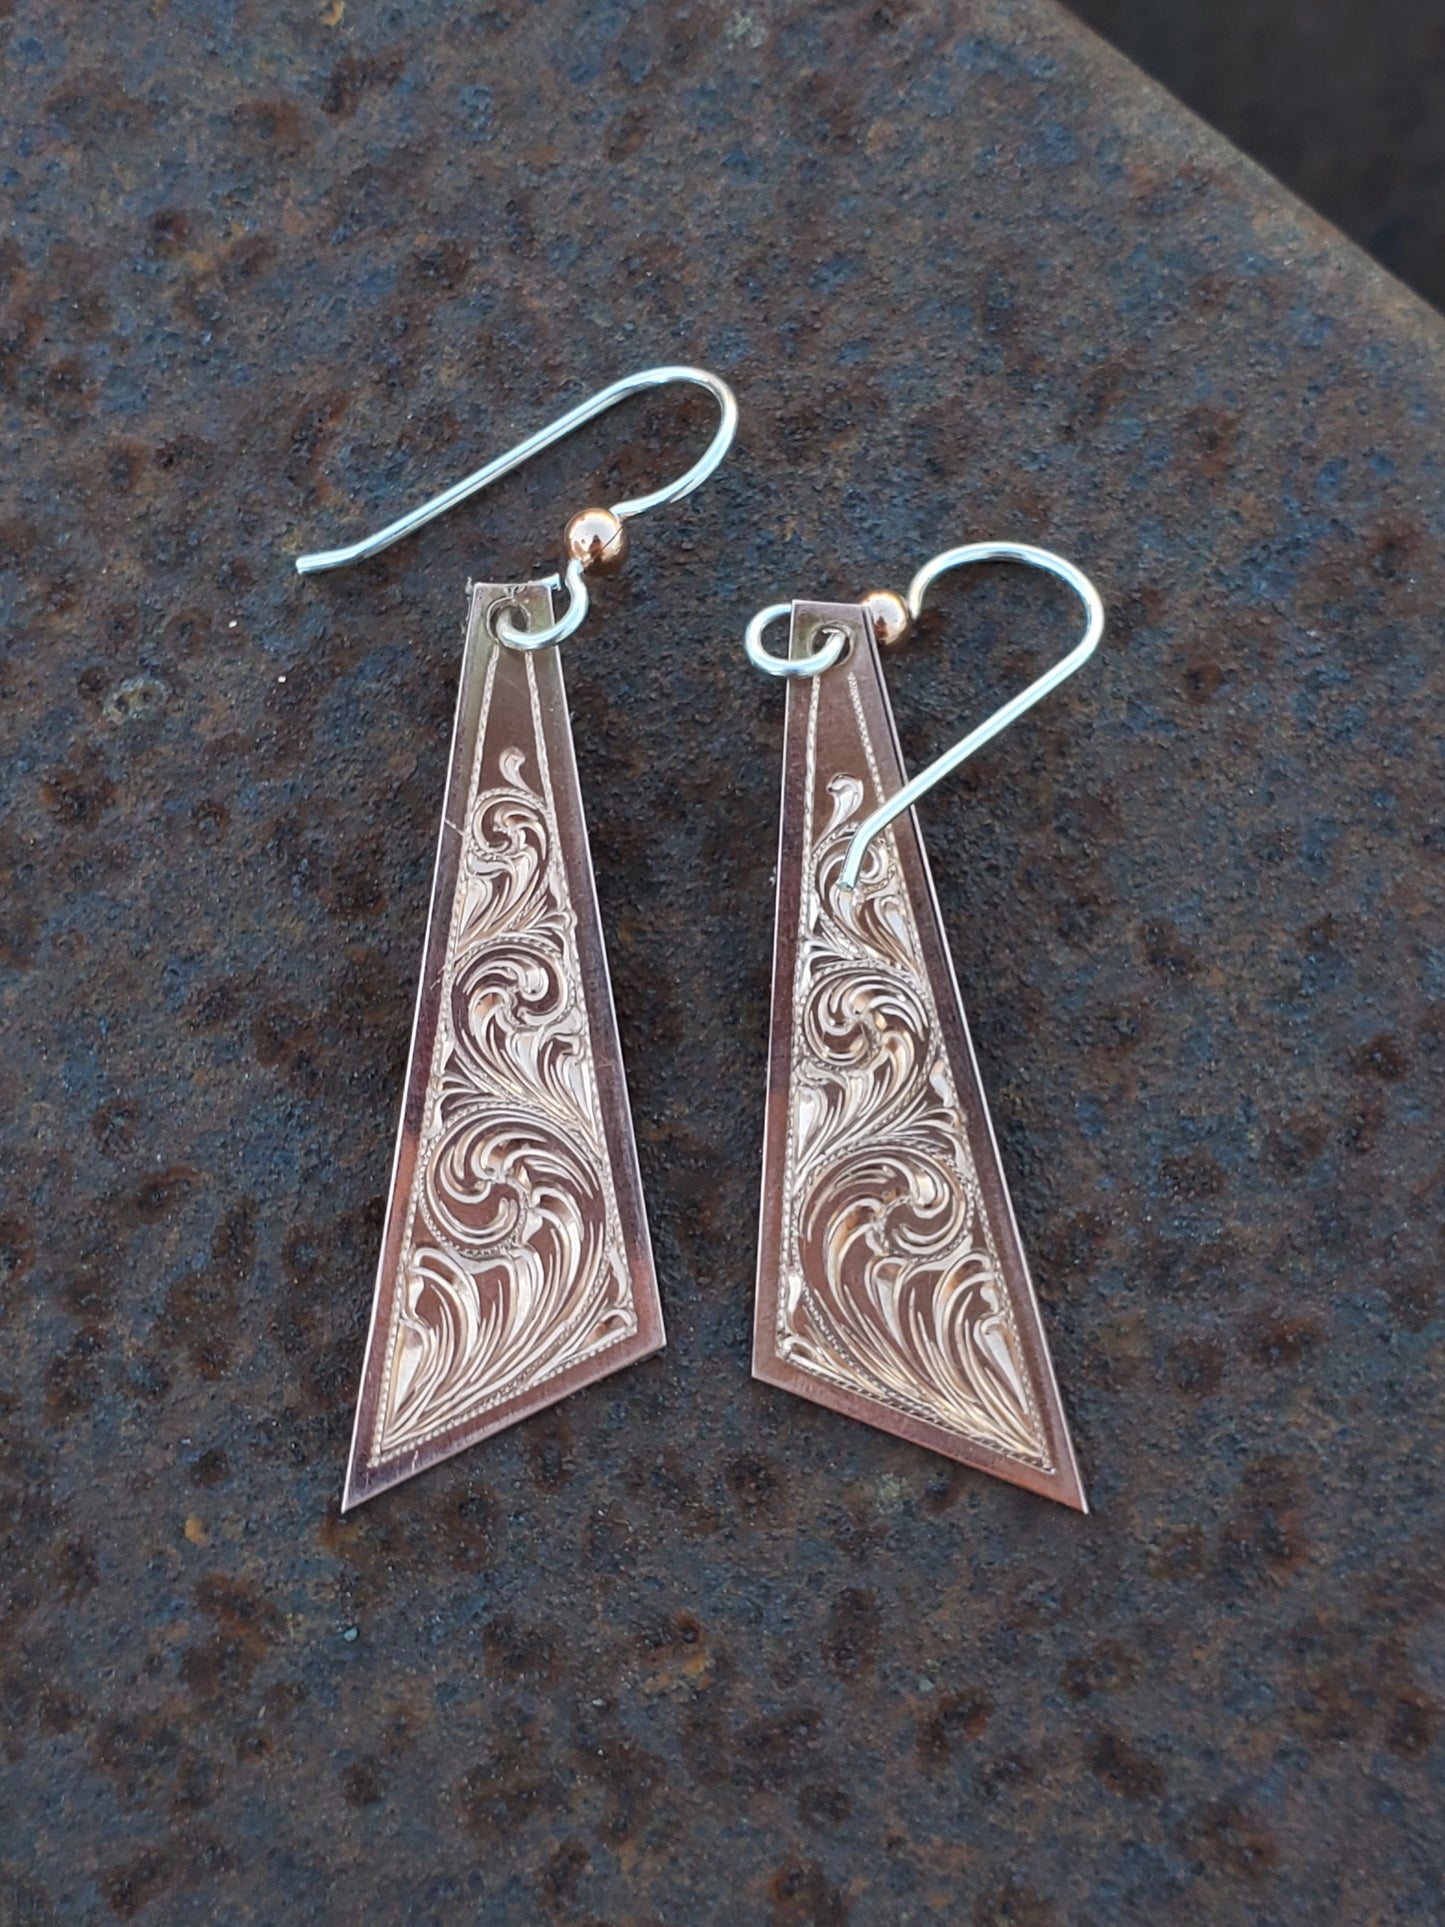 Abstract Dangle Earrings in Copper: Hand Engraved Western Bridal Jewelry, Copper Dangle Earrings, Cowgirl Bridal Gift, Western Copper Earrings, Cowgirl Dangle Earrings